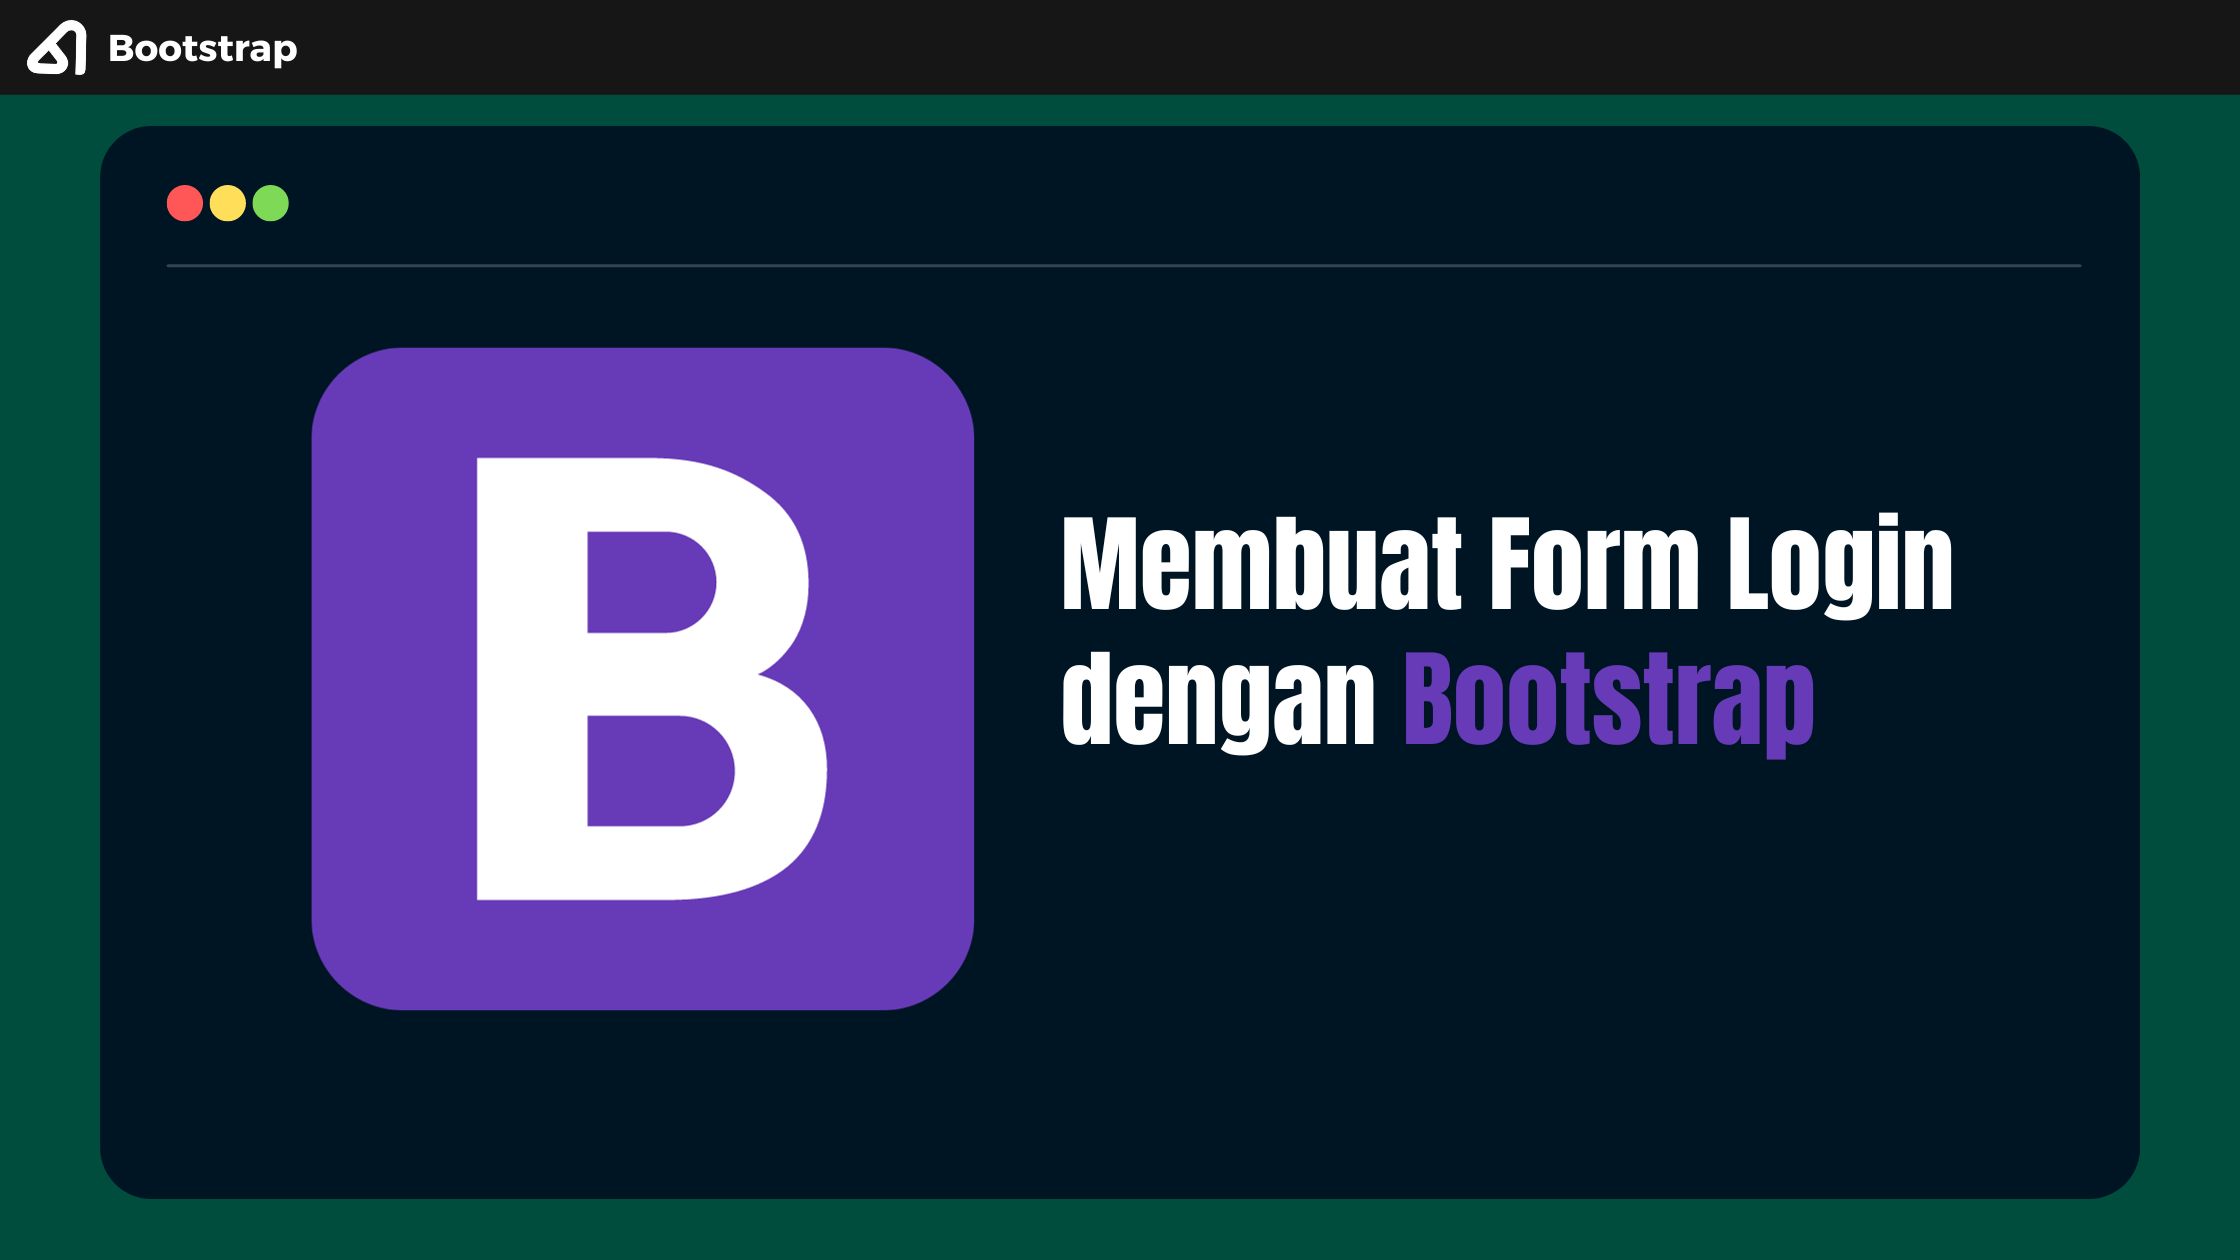 Membuat Form Login dengan Bootstrap